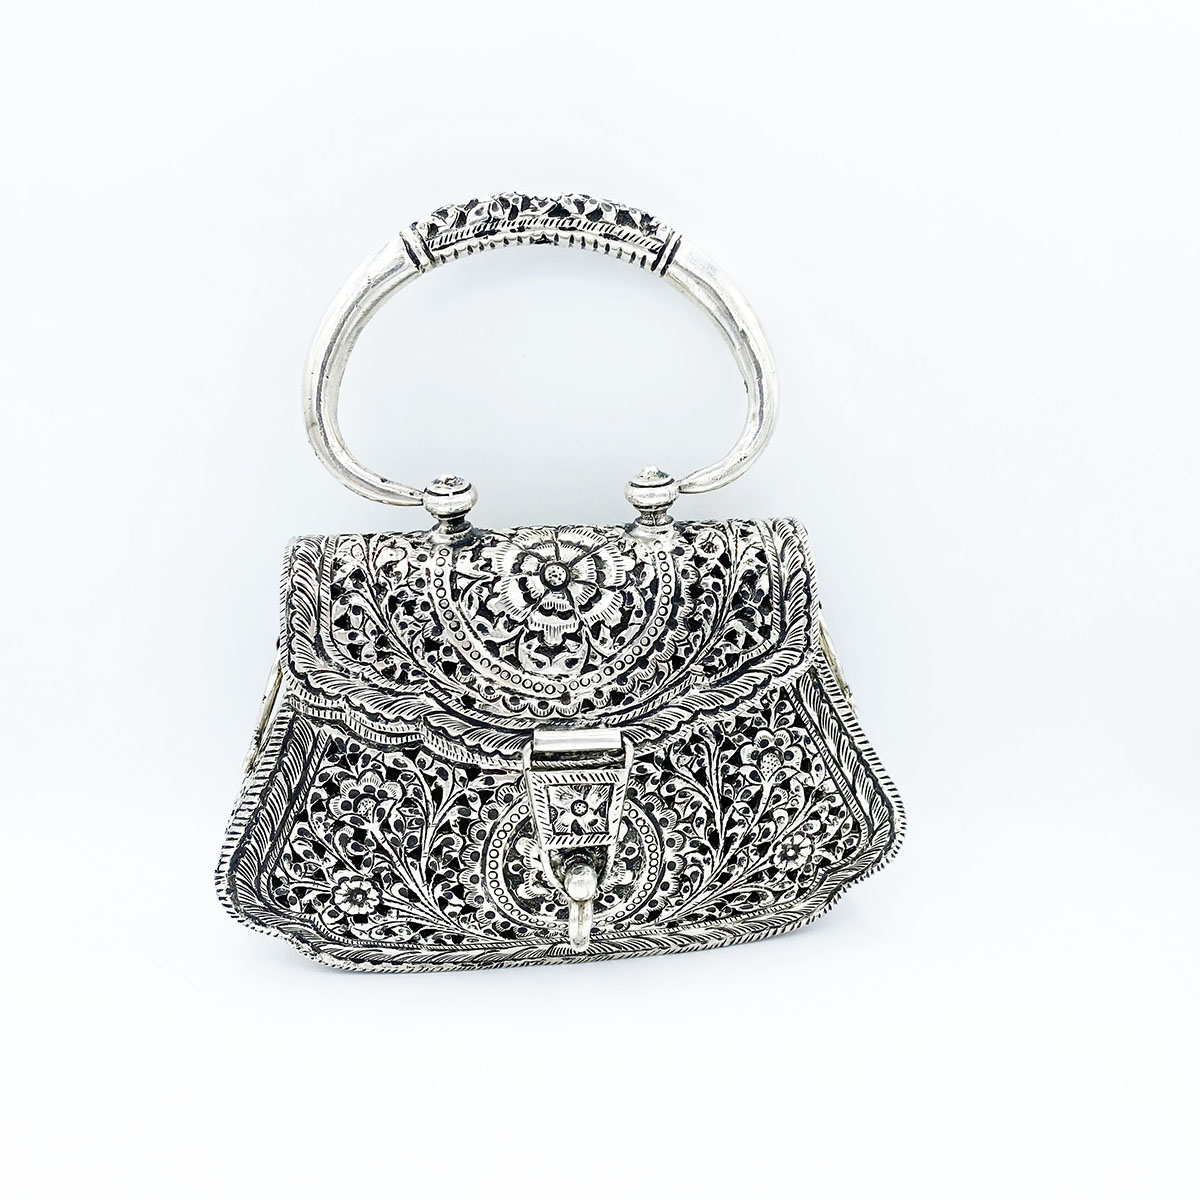 Antique German Silver Mesh Purse Vintage Handbag